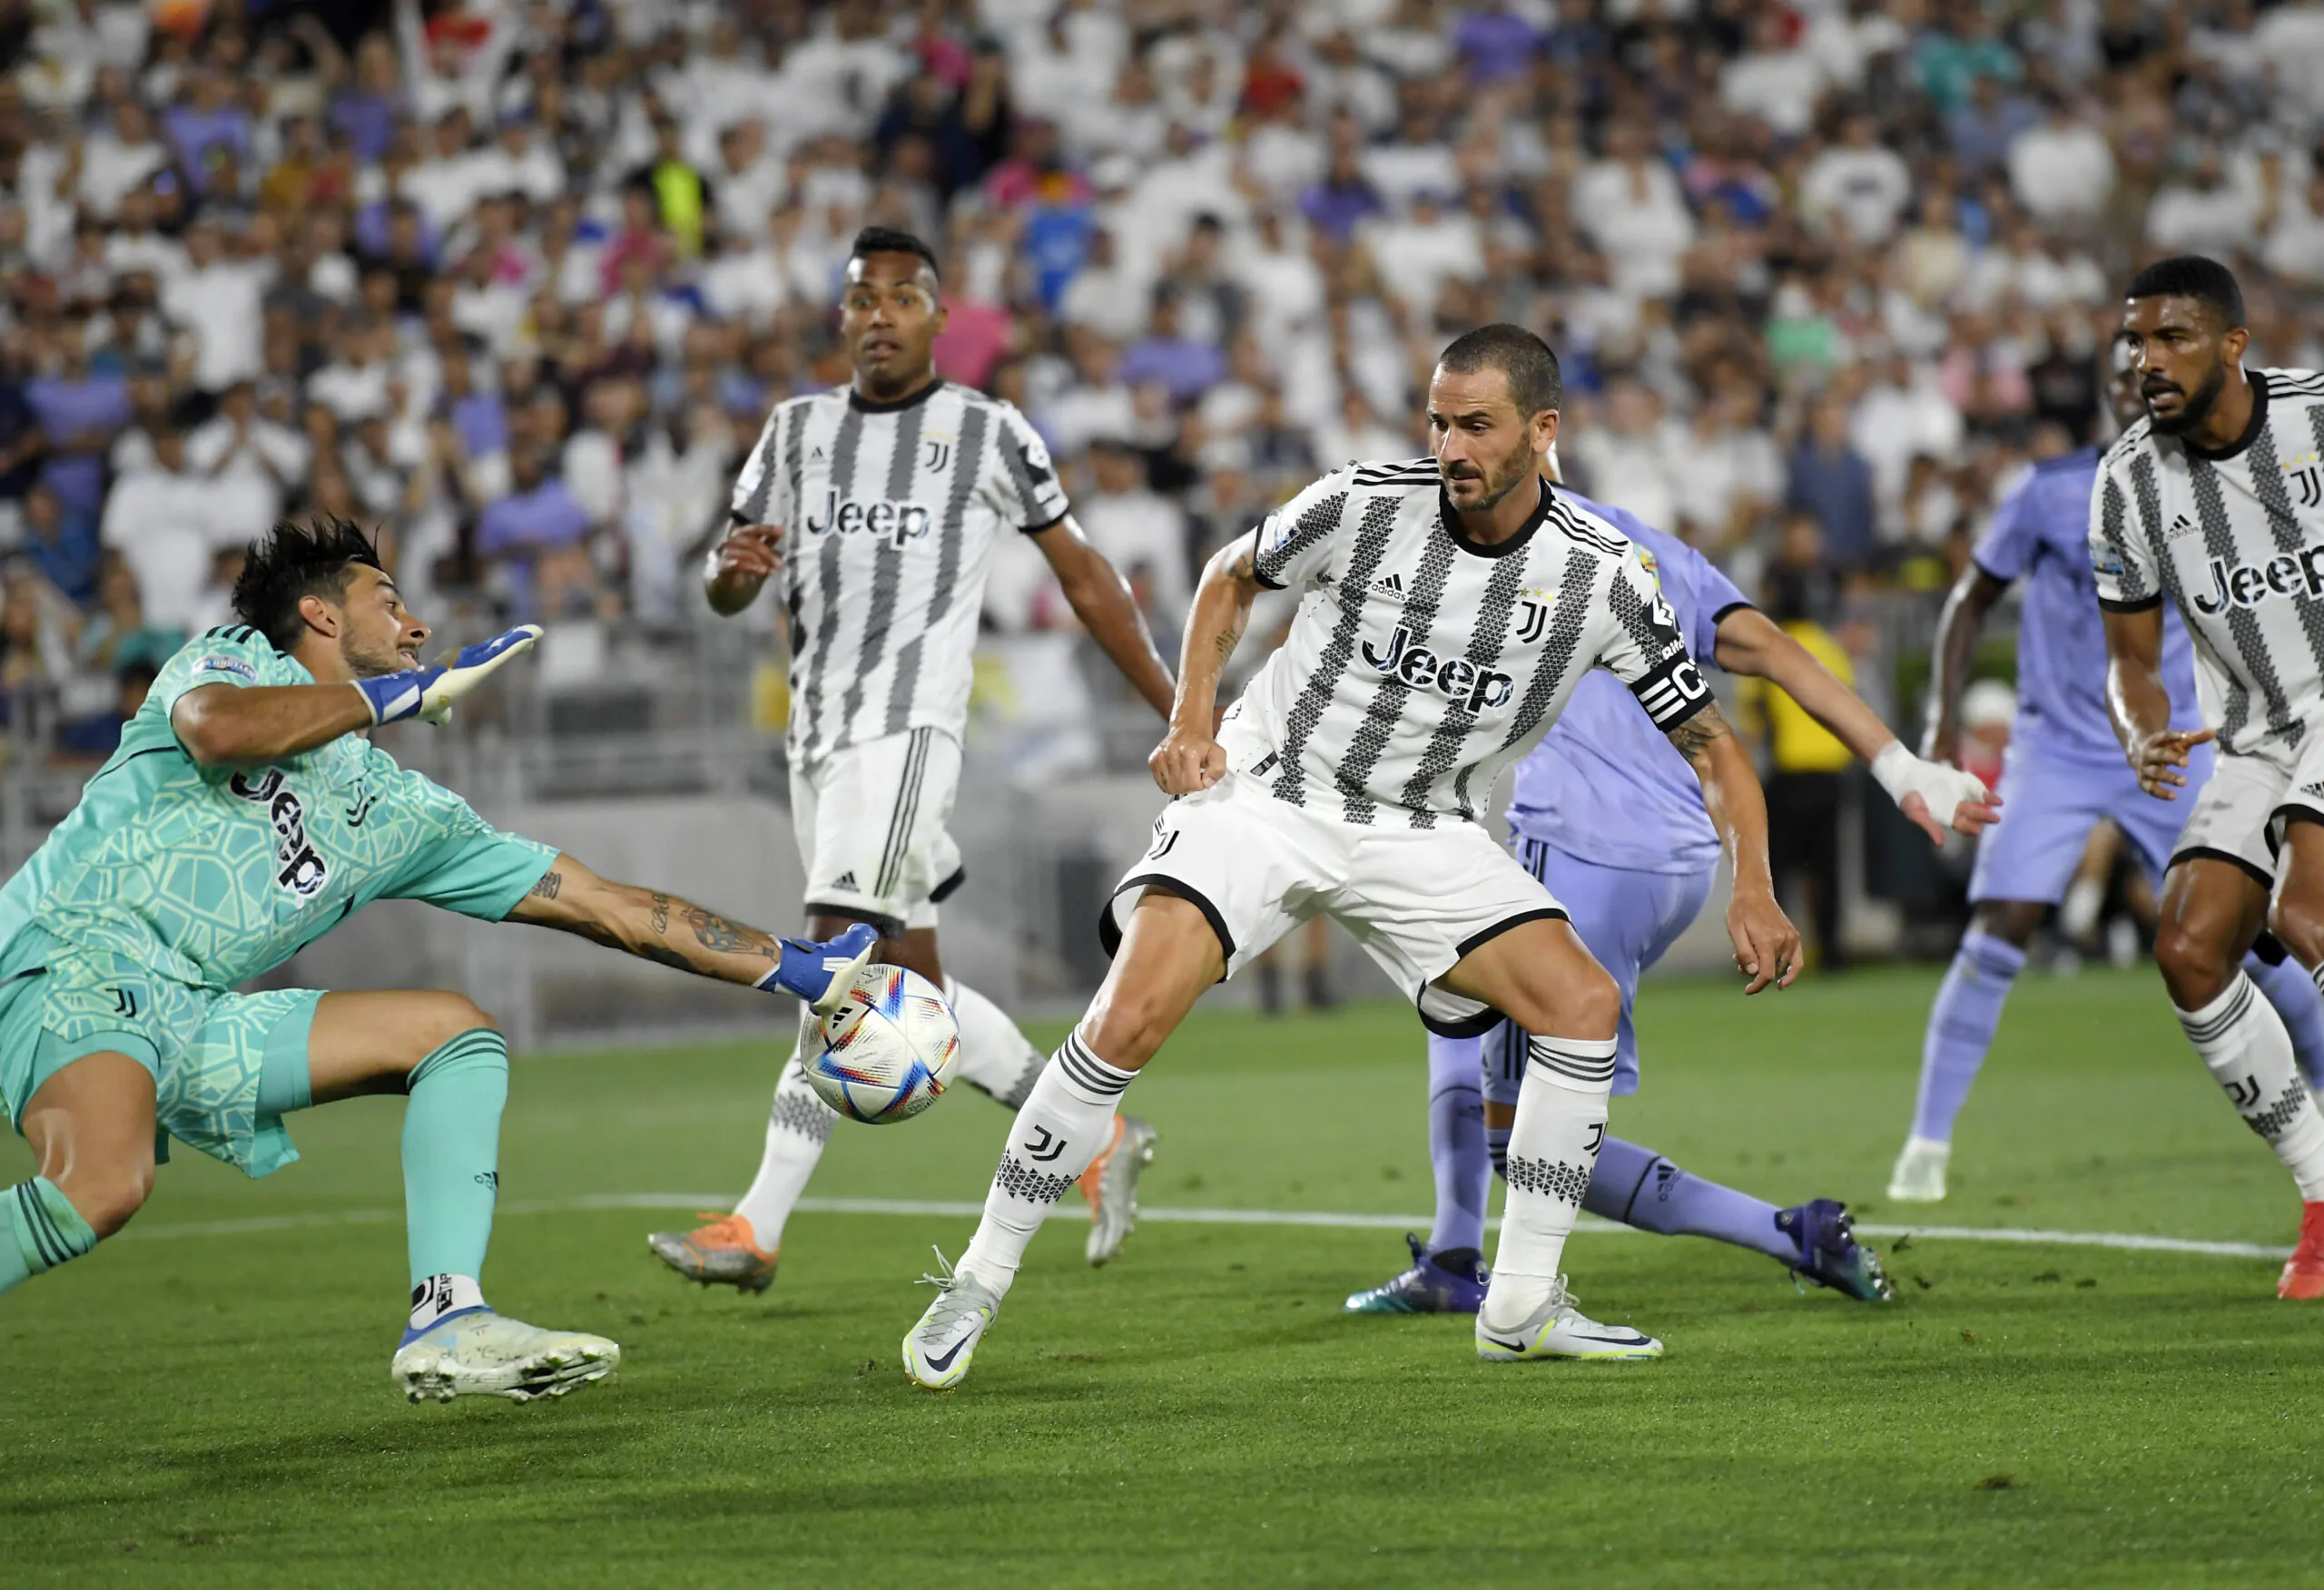 Assenza dell’ultim’ora nella Juventus: non andrà in panchina!